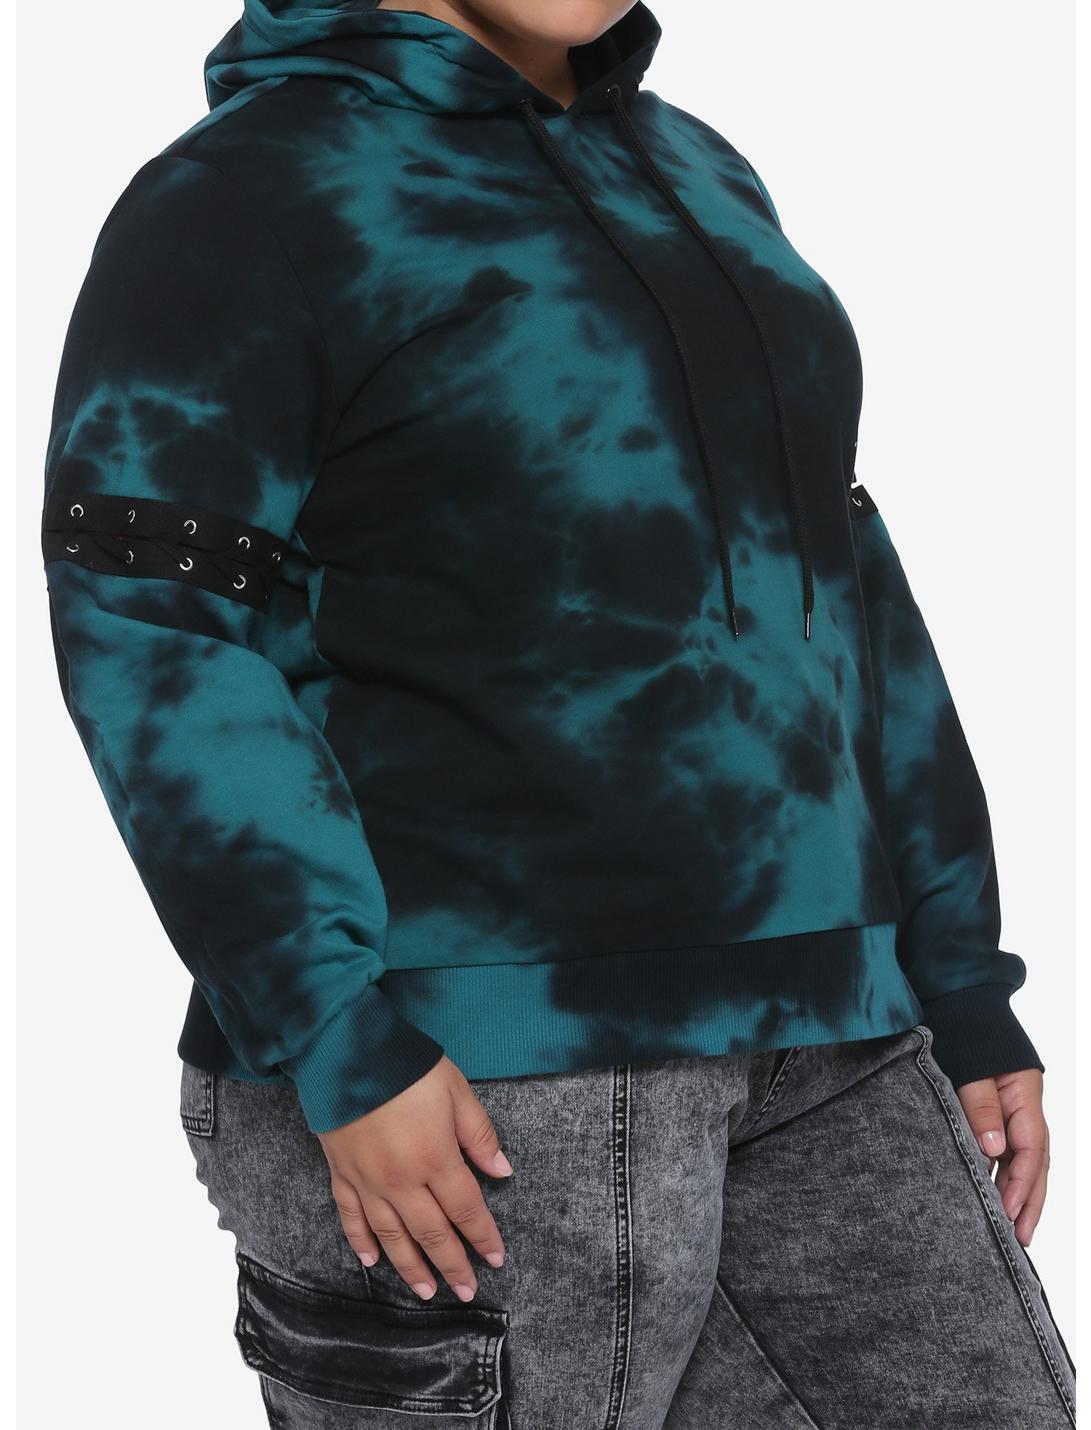 Teal & Black Lace-Up Sleeves Tie-Dye Girls Hoodie Plus Size, MULTI, hi-res